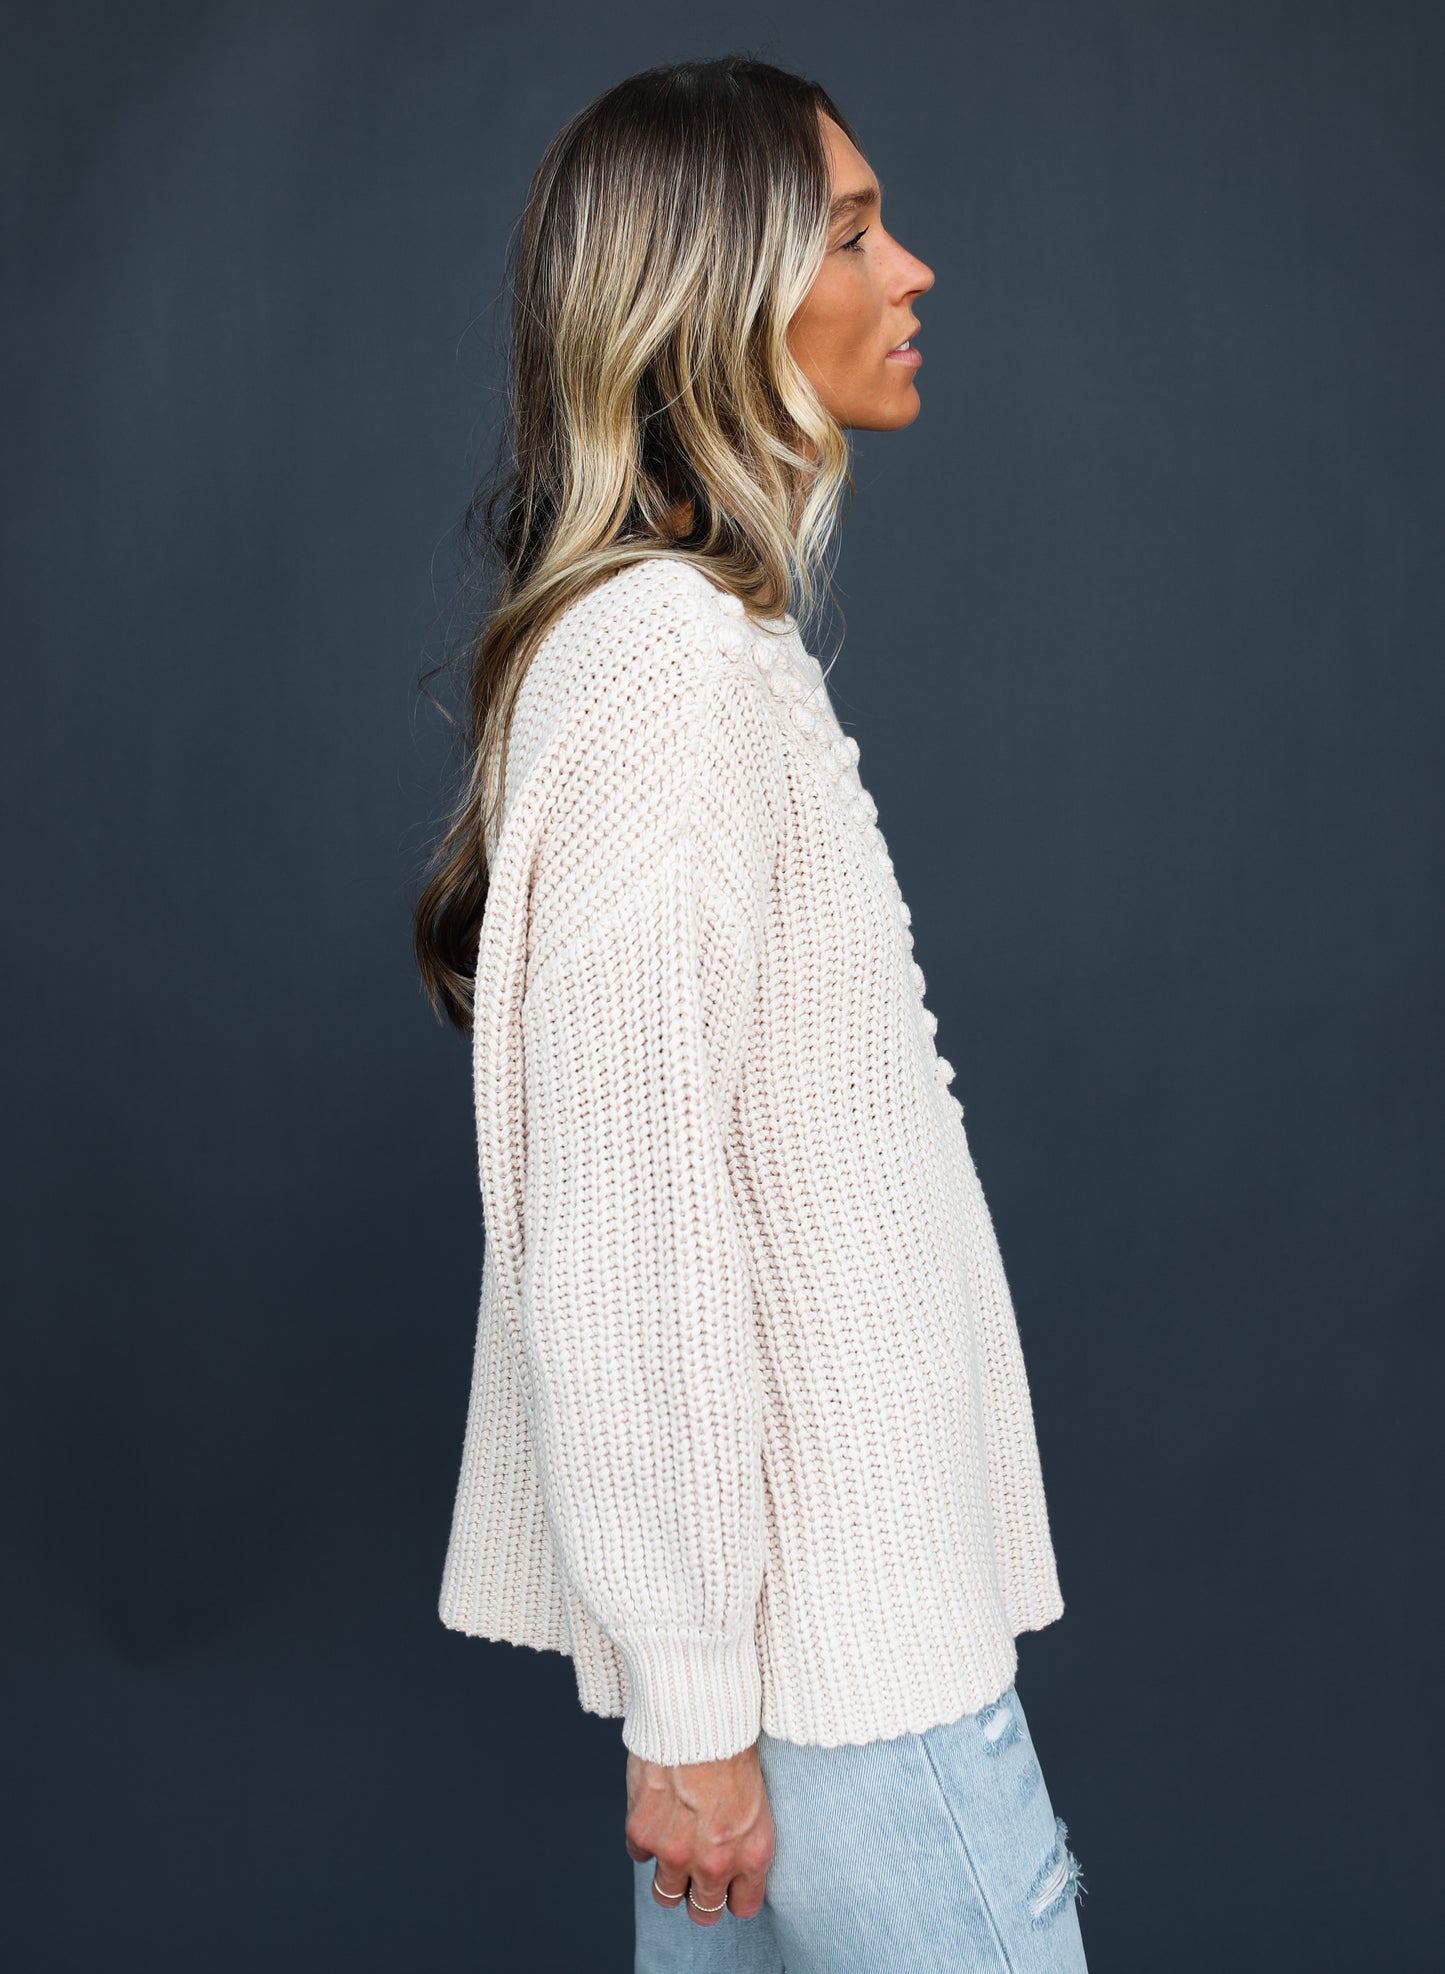 Milee Sweater